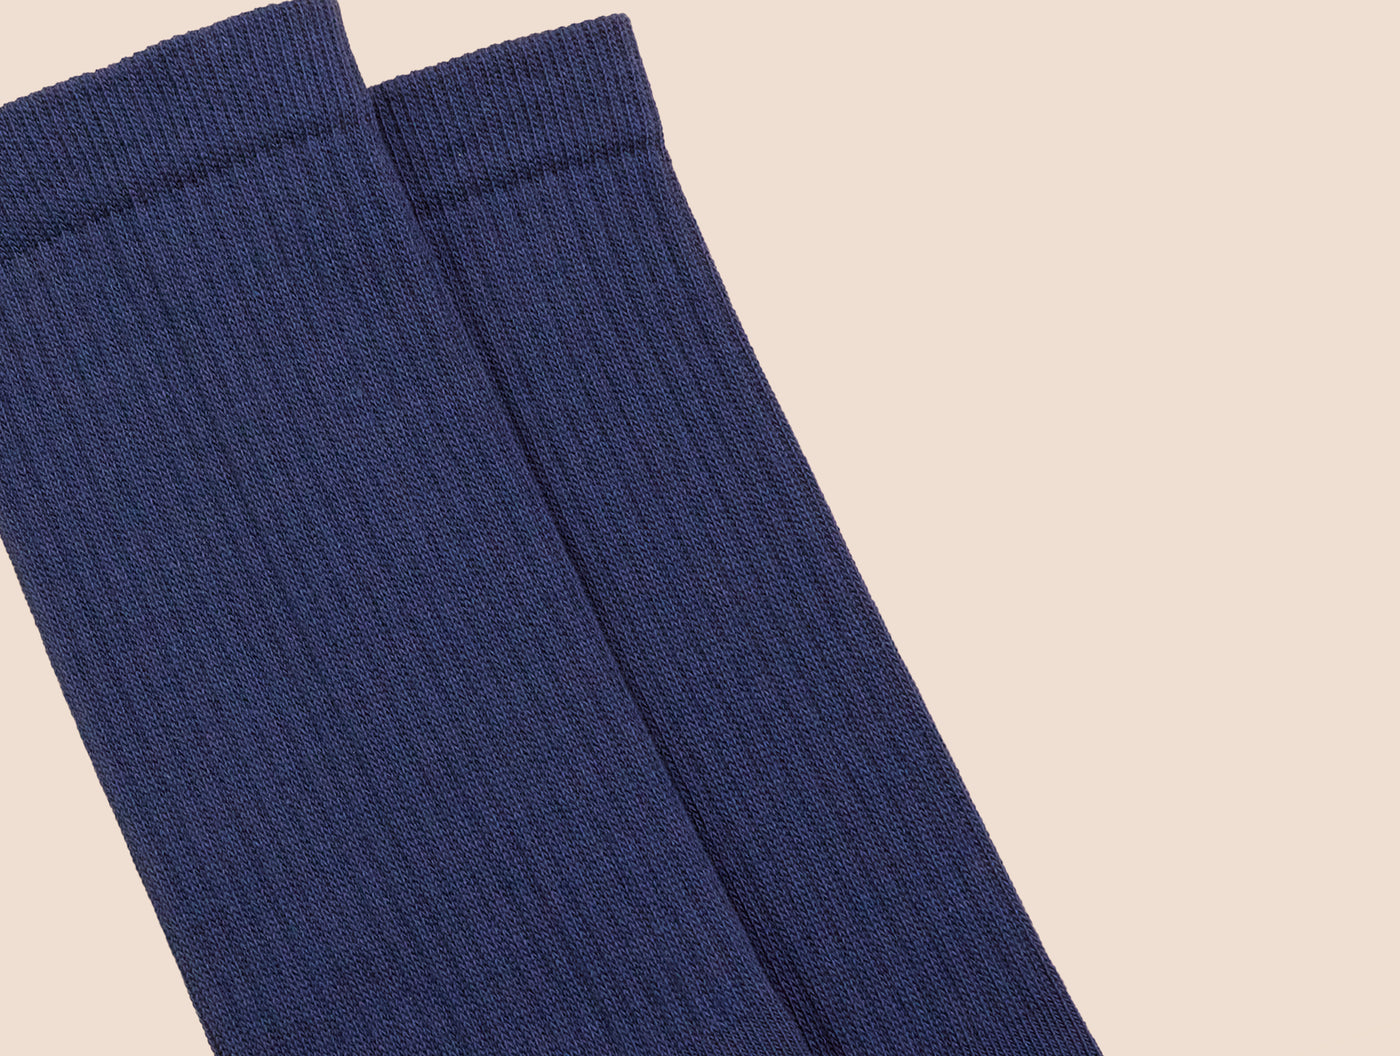 Petrone-chaussettes-tennis-coton-bio-unies-hautes-homme-bleu acier-posees#couleur_bleu acier